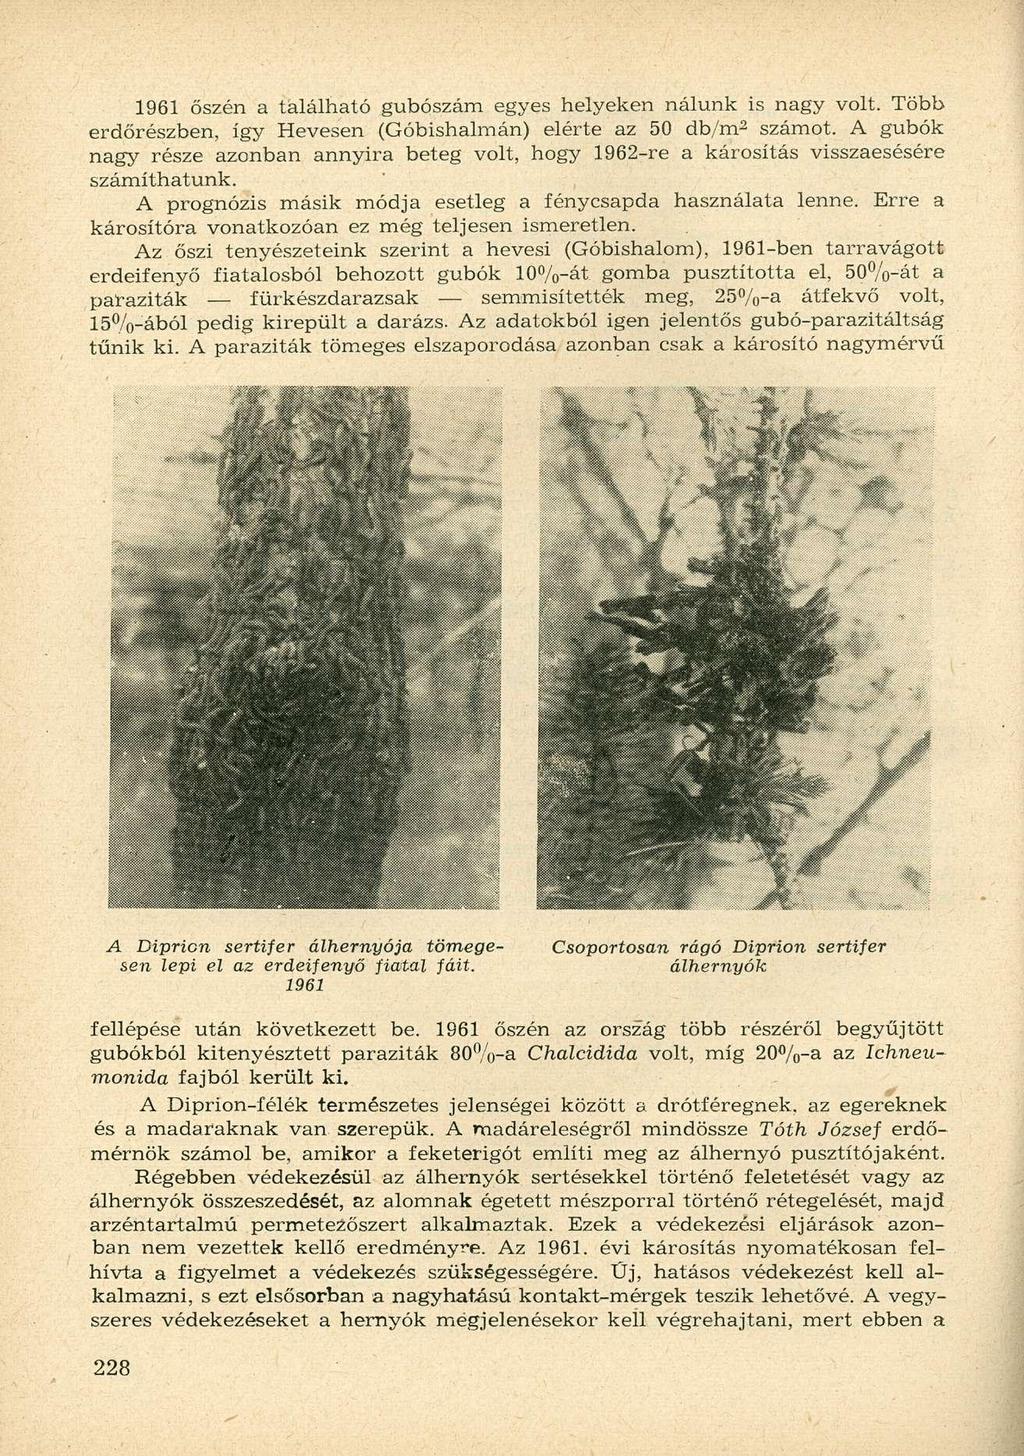 1961 őszén a tálálható gubószám egyes helyeken nálunk is nagy volt. Több erdőrészben, így Hevesen (Góbishalmán) elérte az 50 db/m- 2 számot.